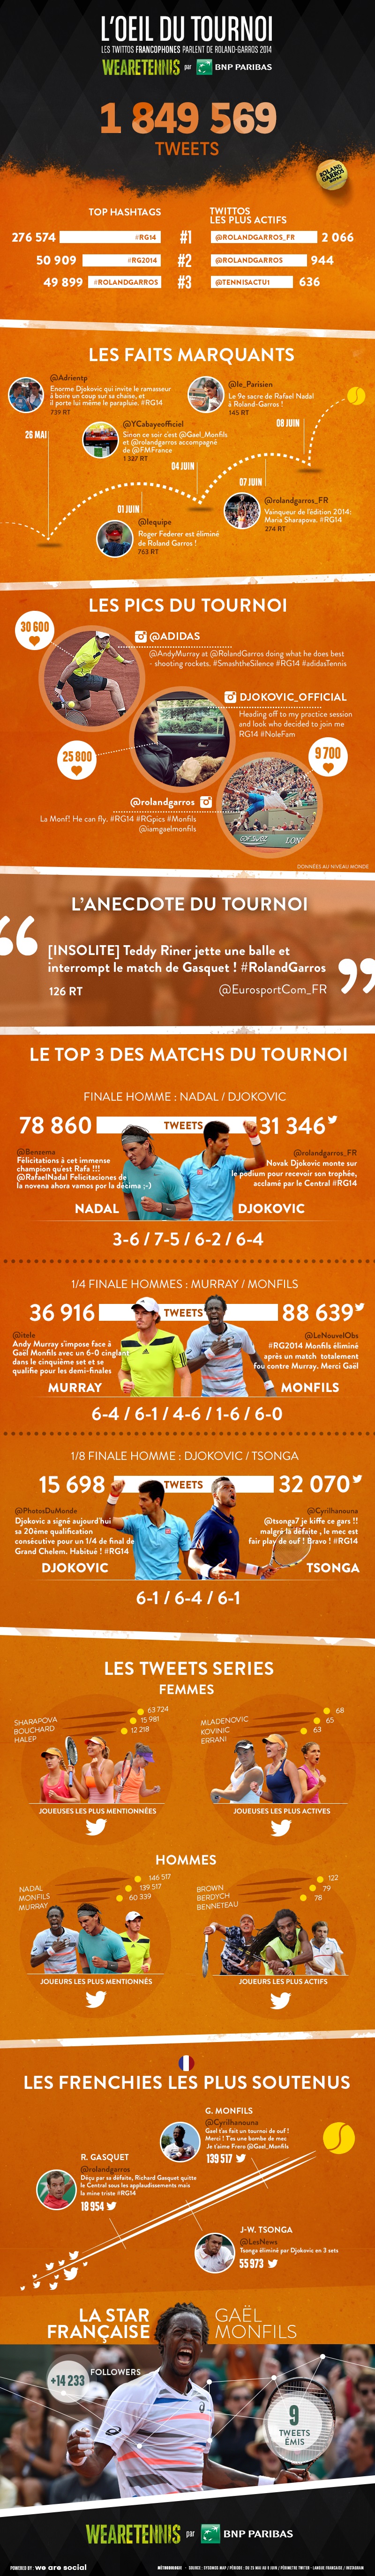 Roland Garros 2014: comment les Français ont-ils vécu le tournoi? (Source: We Are Tennis)